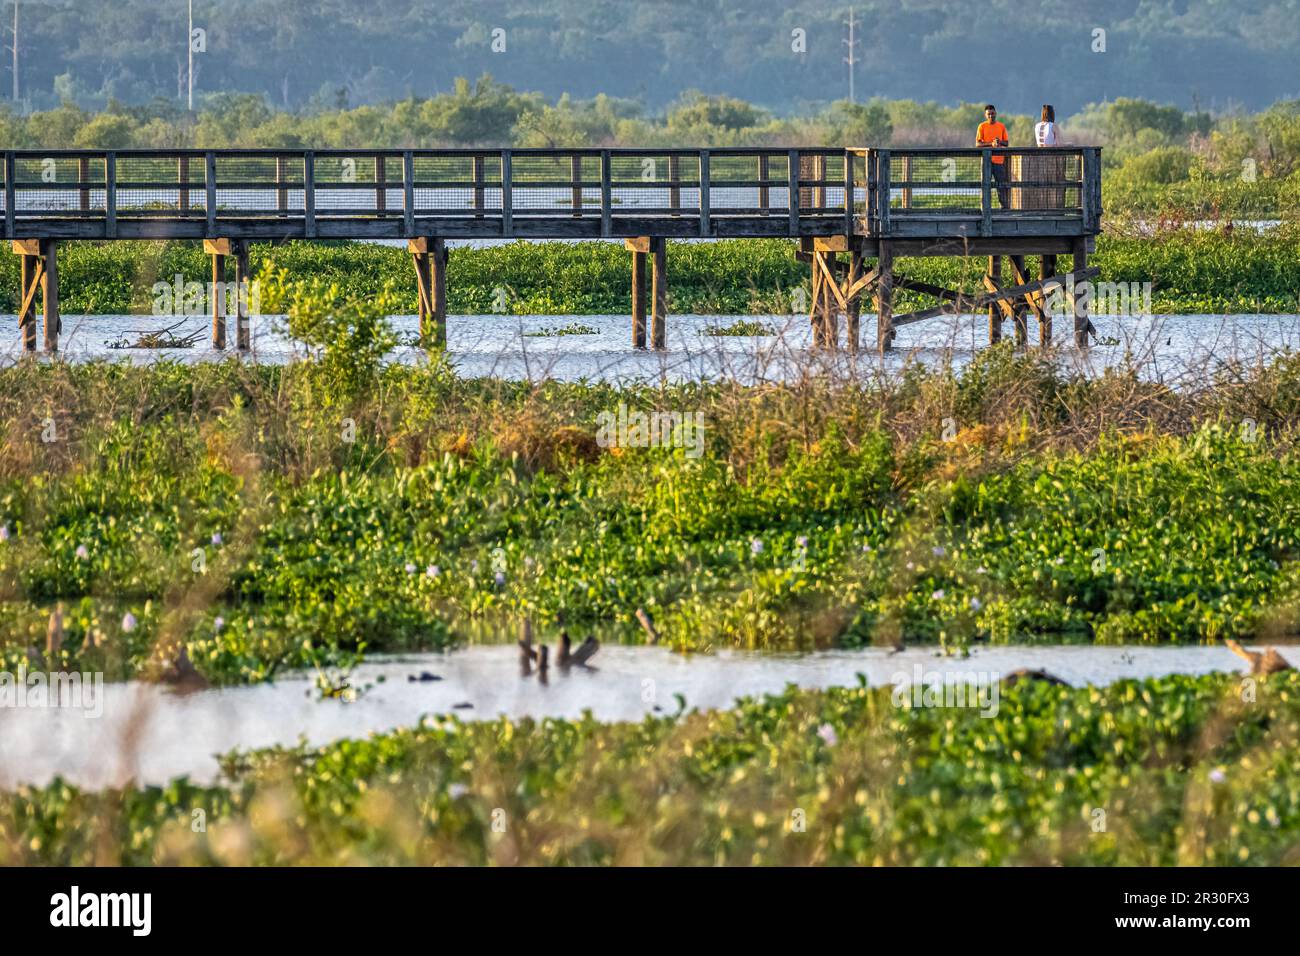 Passeggiata panoramica sull'Ecopassage Boardwalk sulle paludi e sull'habitat naturale degli alligatori al Paynes Prairie Preserve state Park di Micanopy, Florida. (USA) Foto Stock